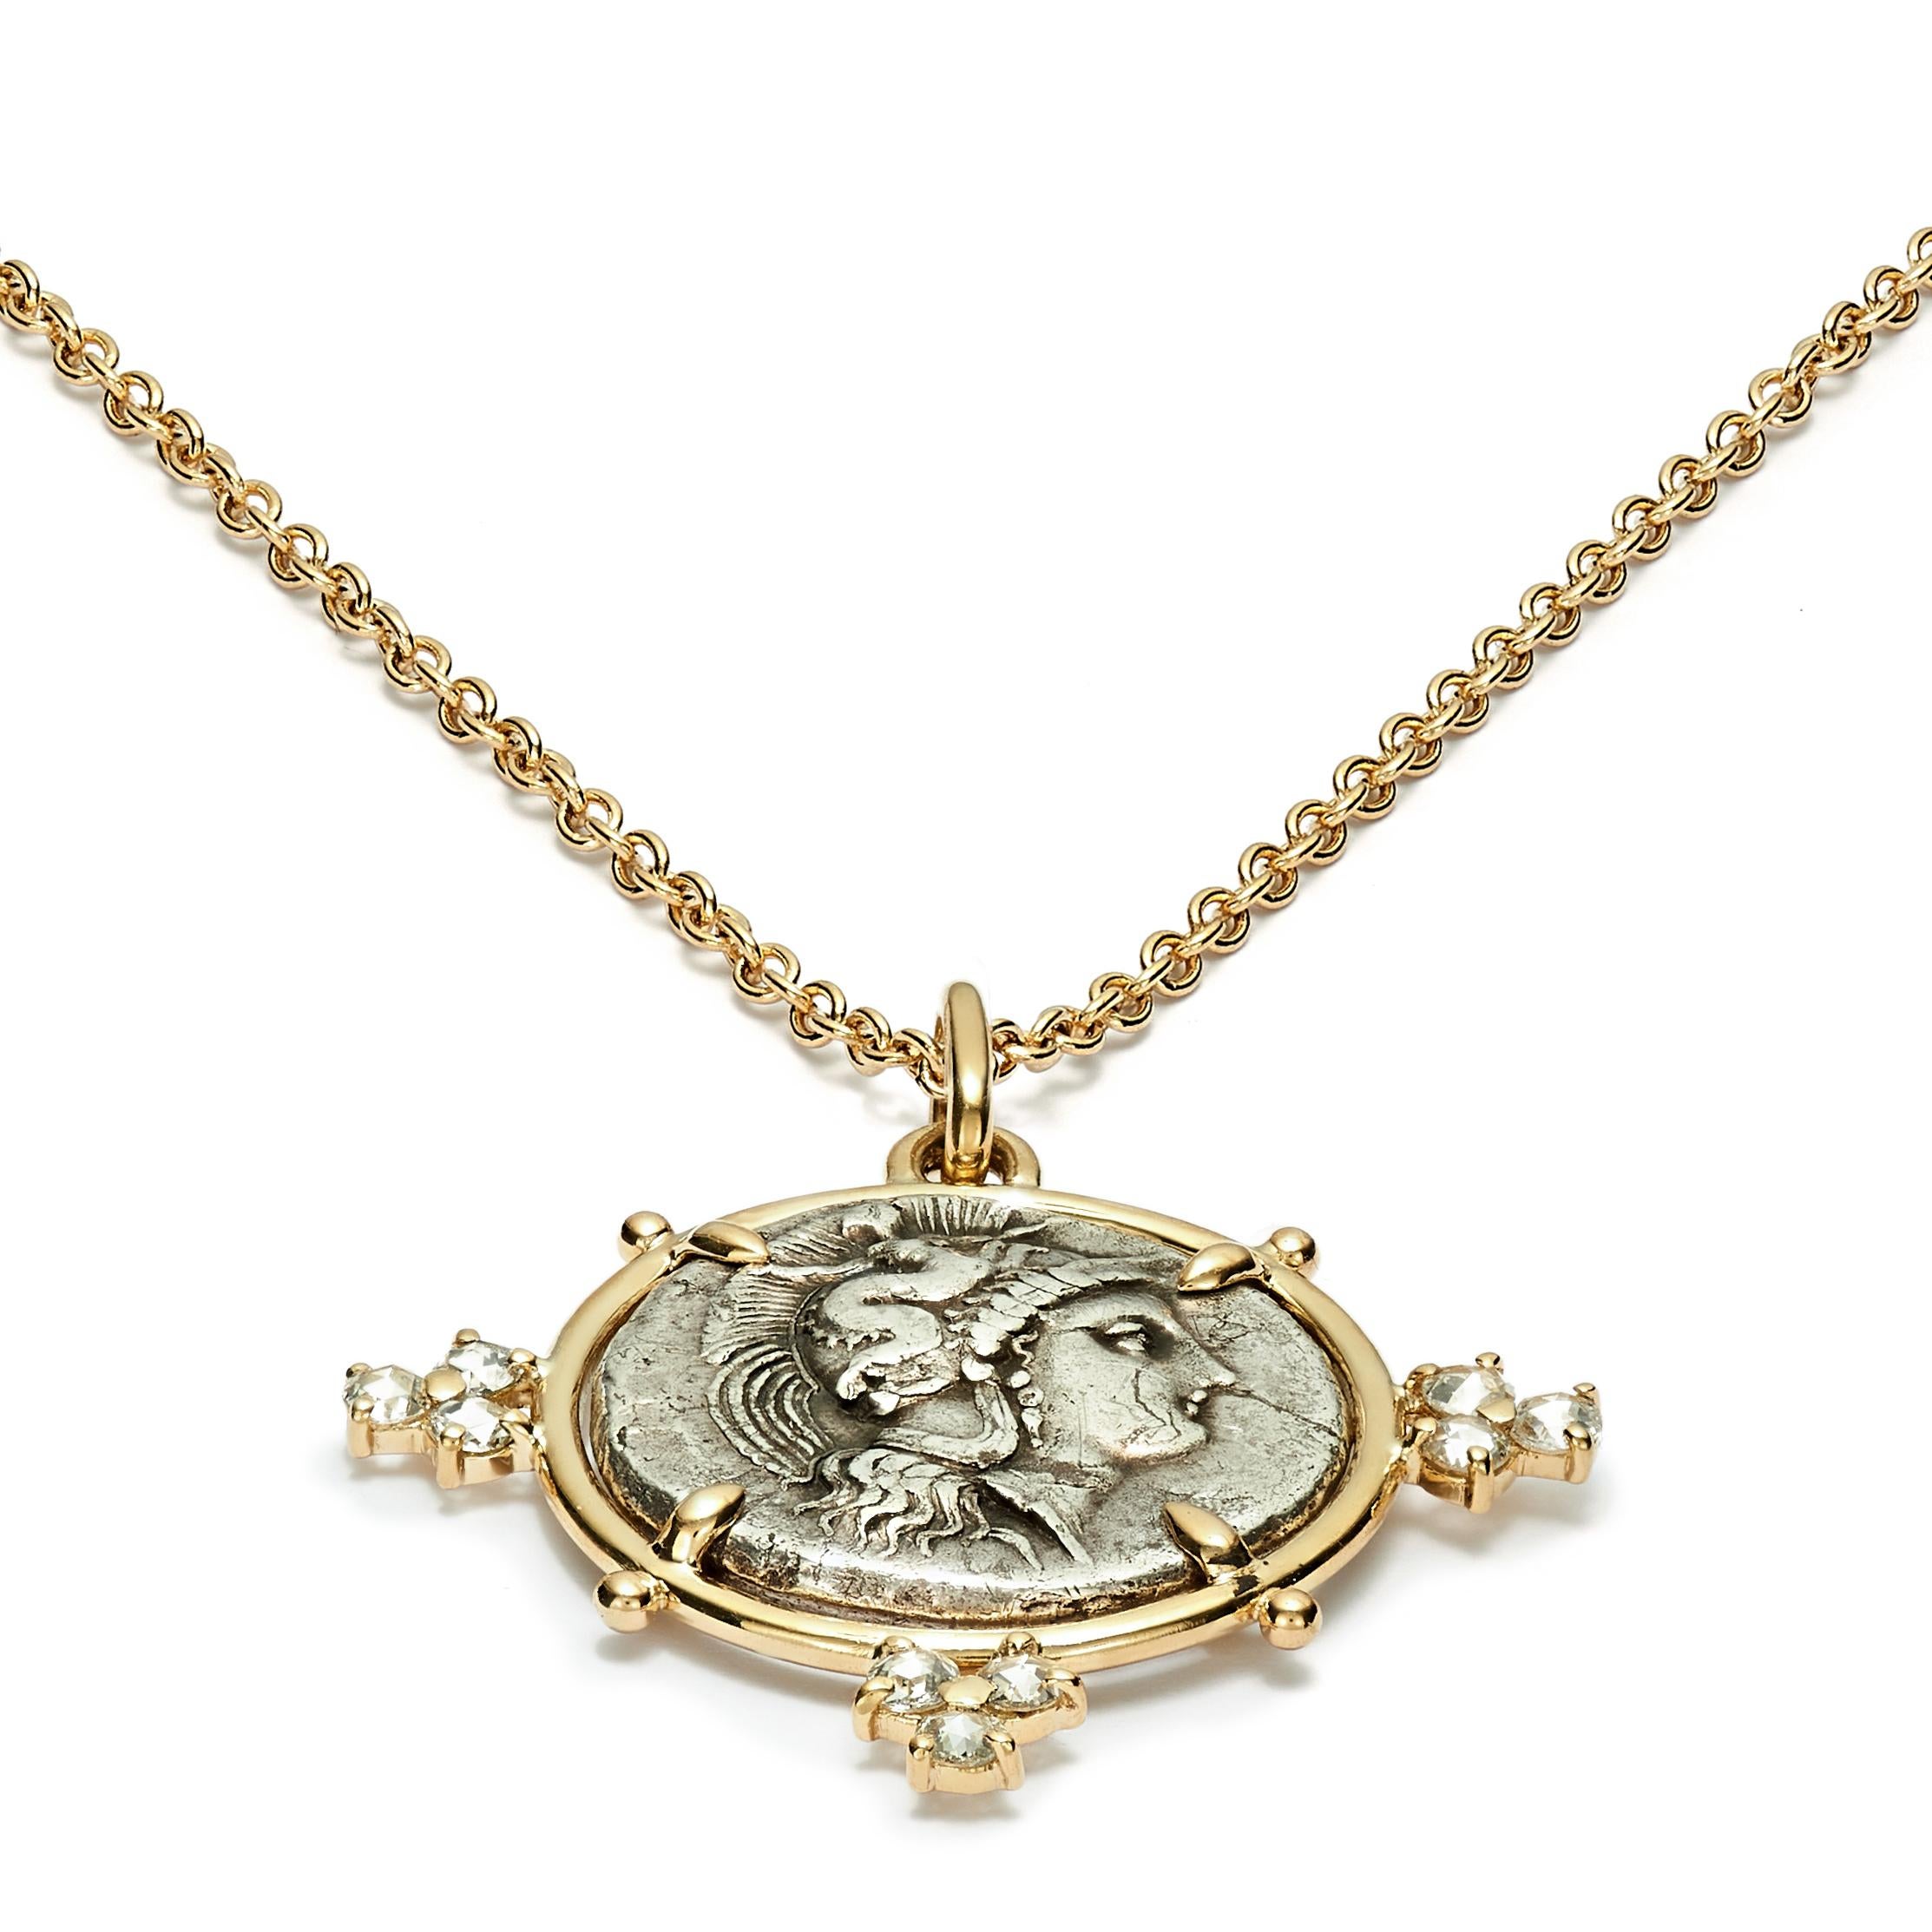 Dieses DUBINI Münzcollier aus der Kollektion 'Empires' zeigt eine authentische Silbermünze aus Heraclea, Lukanien, aus der Zeit um 350 v. Chr., gefasst in 18 Karat Gelbgold mit Diamanten im Rosenschliff.

Auf der Münze abgebildet: 
Vorderseite -